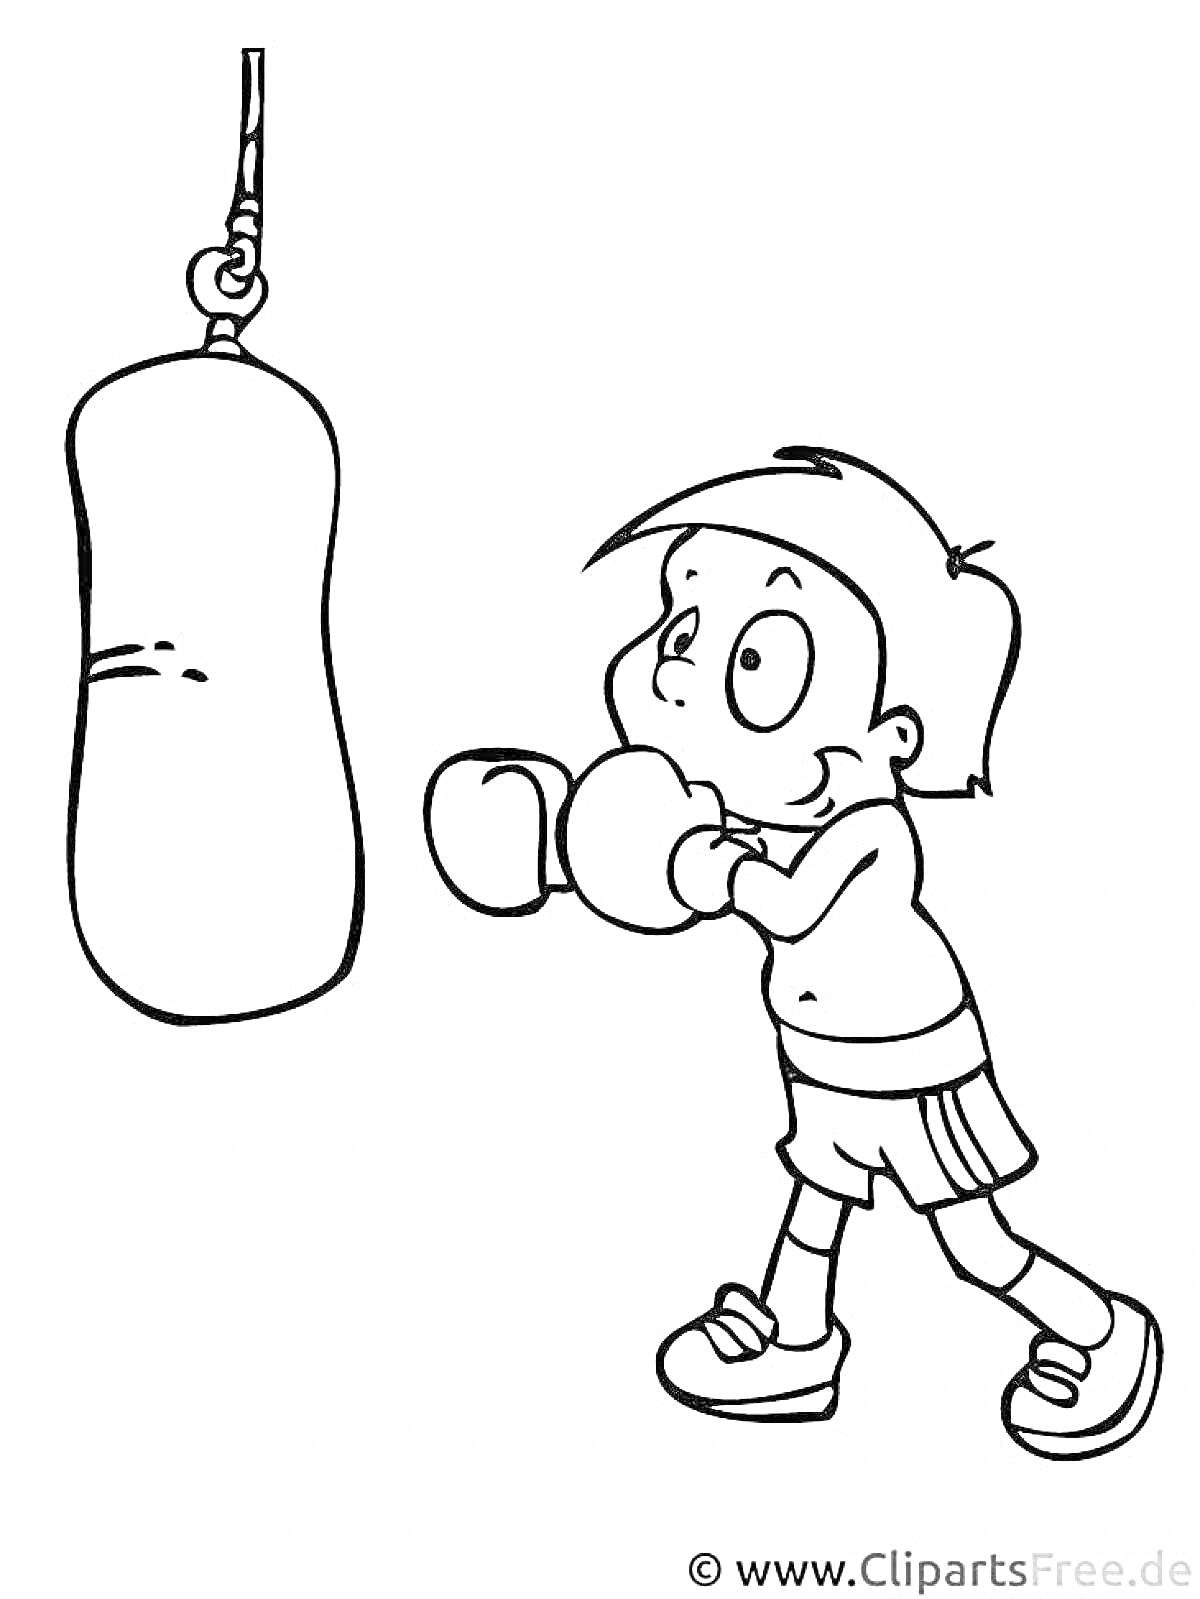 Раскраска Ребенок в боксерских перчатках бьет боксерскую грушу